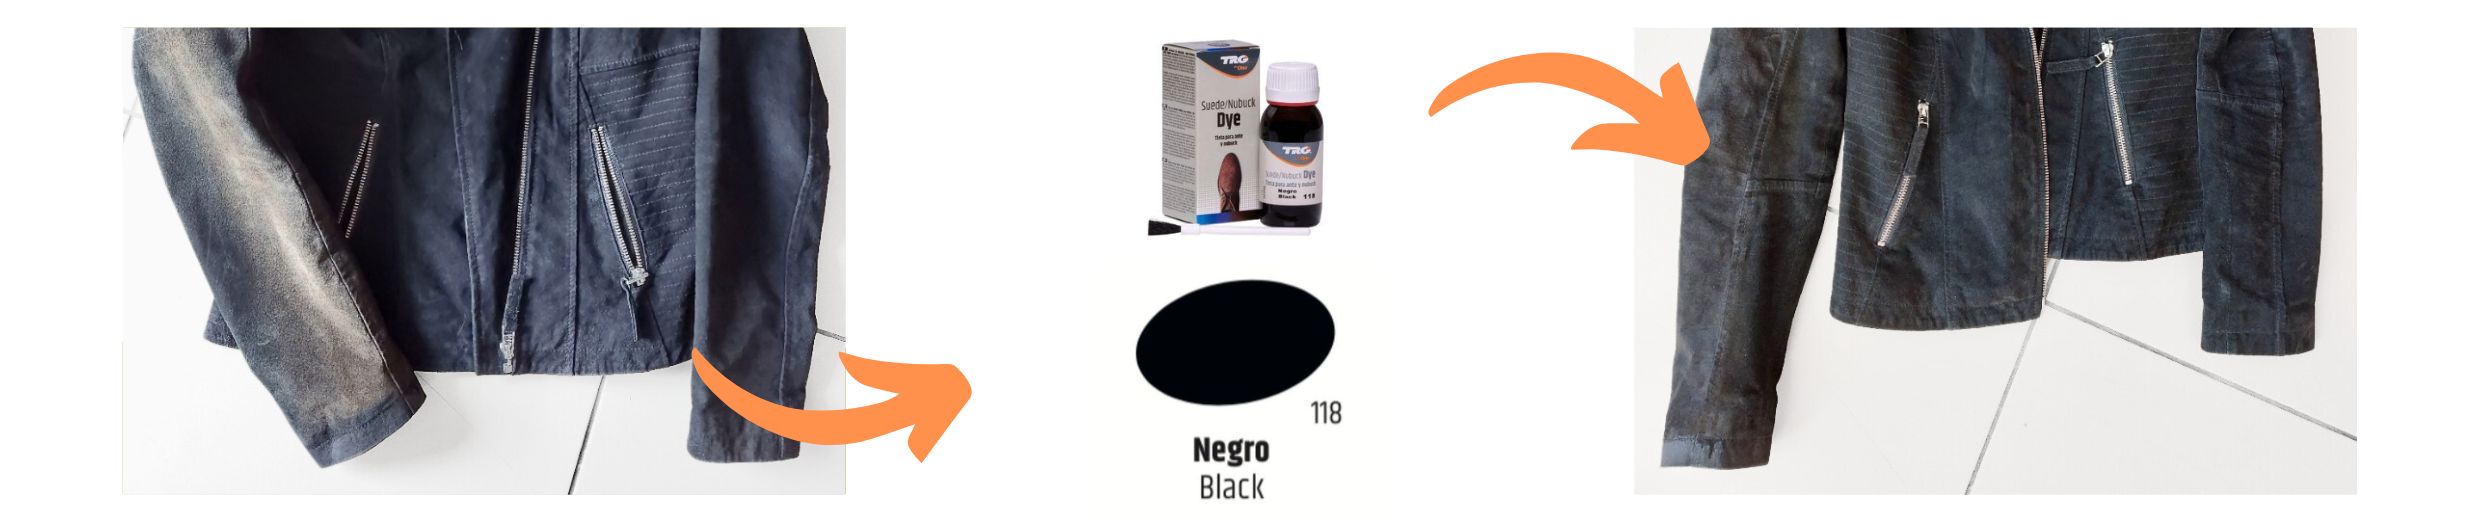 Barva černá na semiš Suede Dye TRG THE ONE black 118 pro opravu barvy odřené vybledlé semišové černé bundy